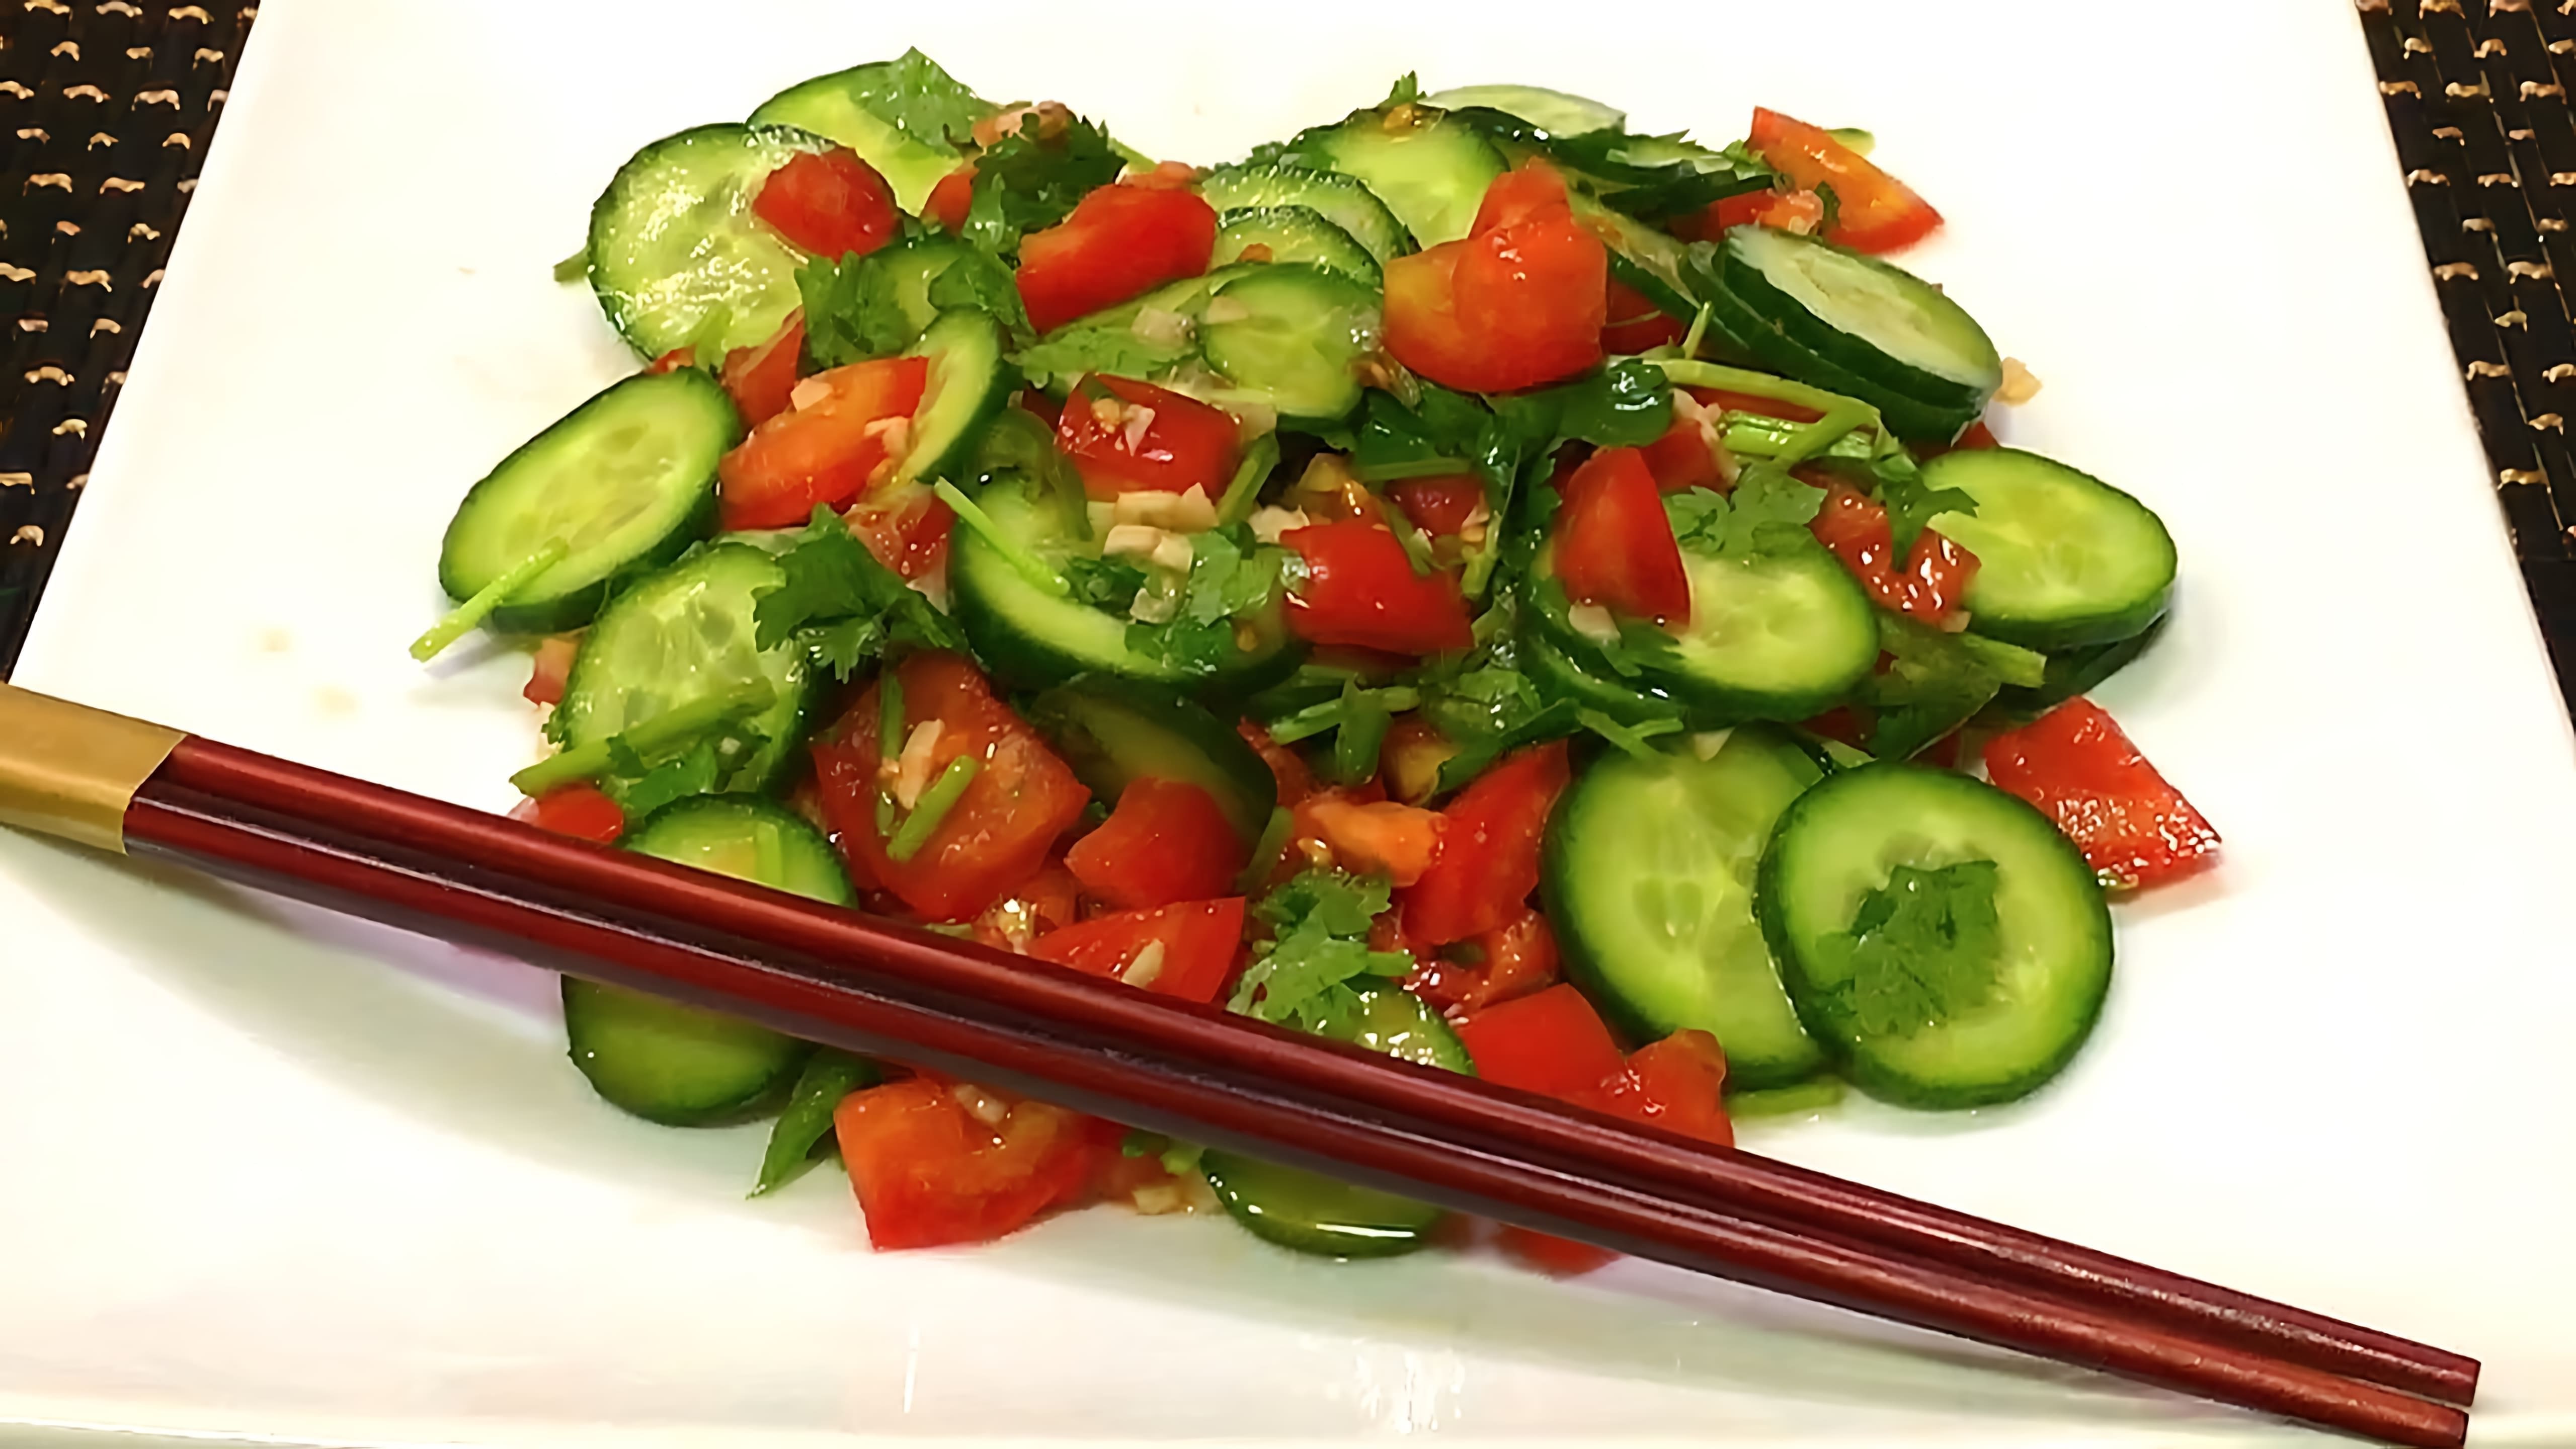 В этом видео демонстрируется процесс приготовления китайского салата из огурцов и помидоров